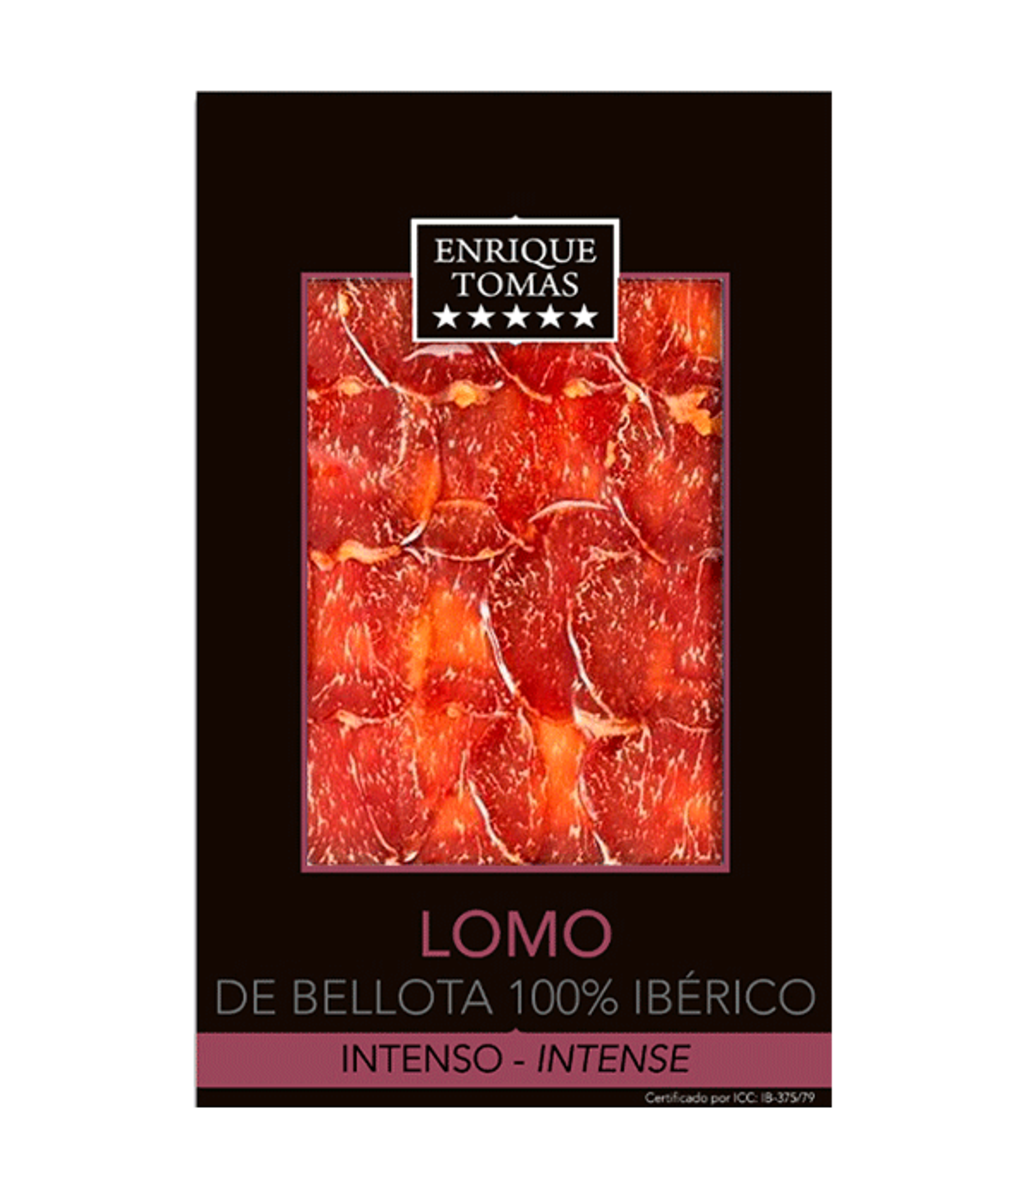 Lomo 5 stars Intense - 80 gr Enrique Tomás